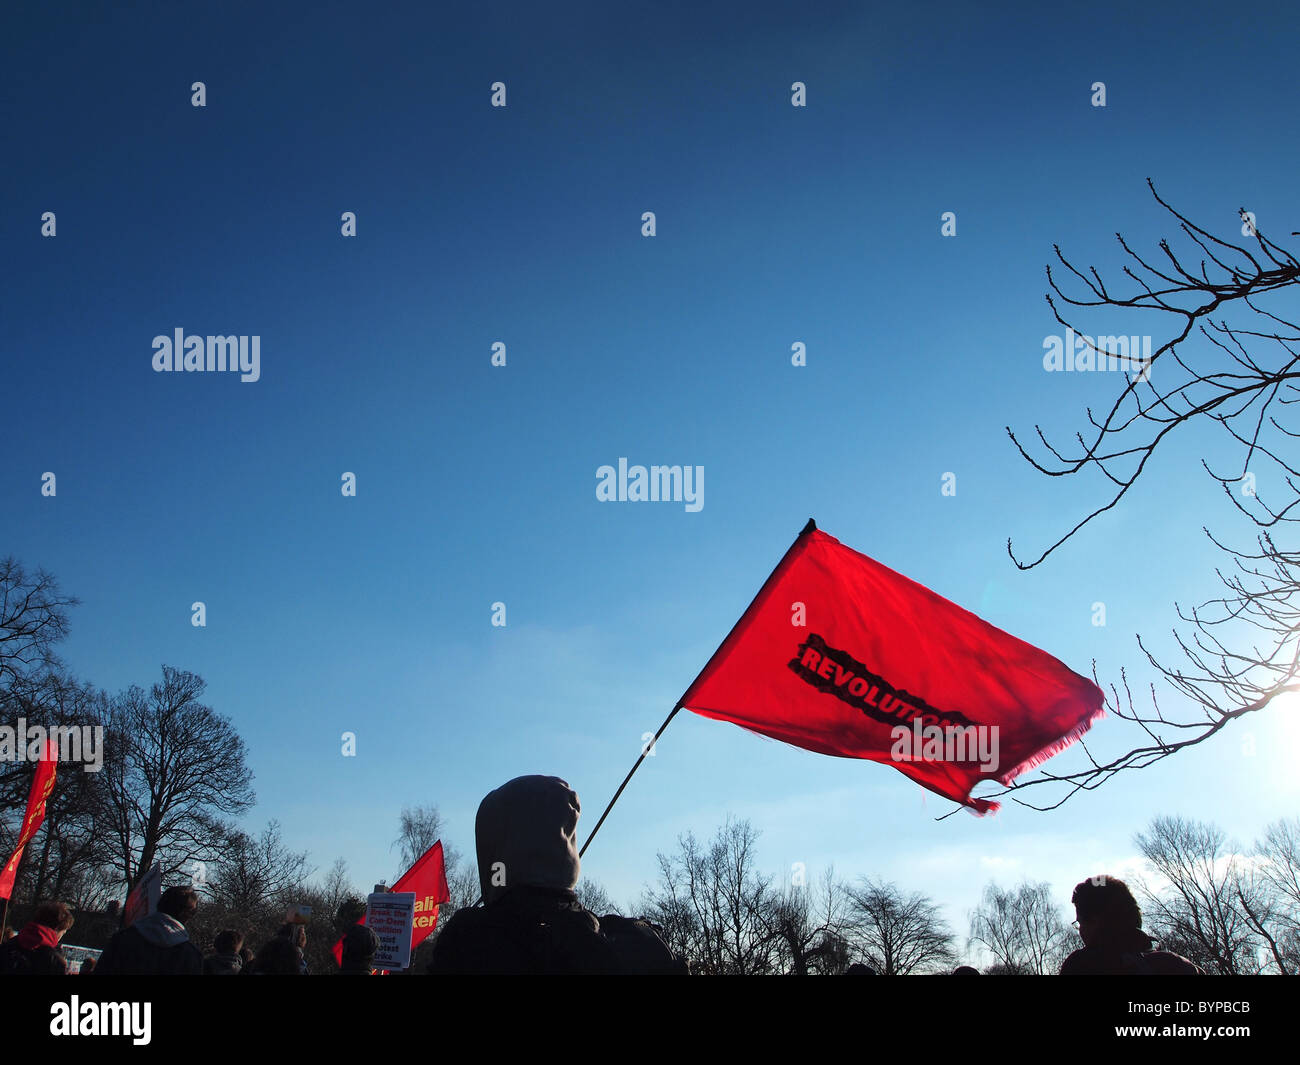 Fotocamere digitali Olympus immagine di studente manifestanti con la bandiera della rivoluzione in Manchester Regno Unito contro le tasse di iscrizione sorge Foto Stock